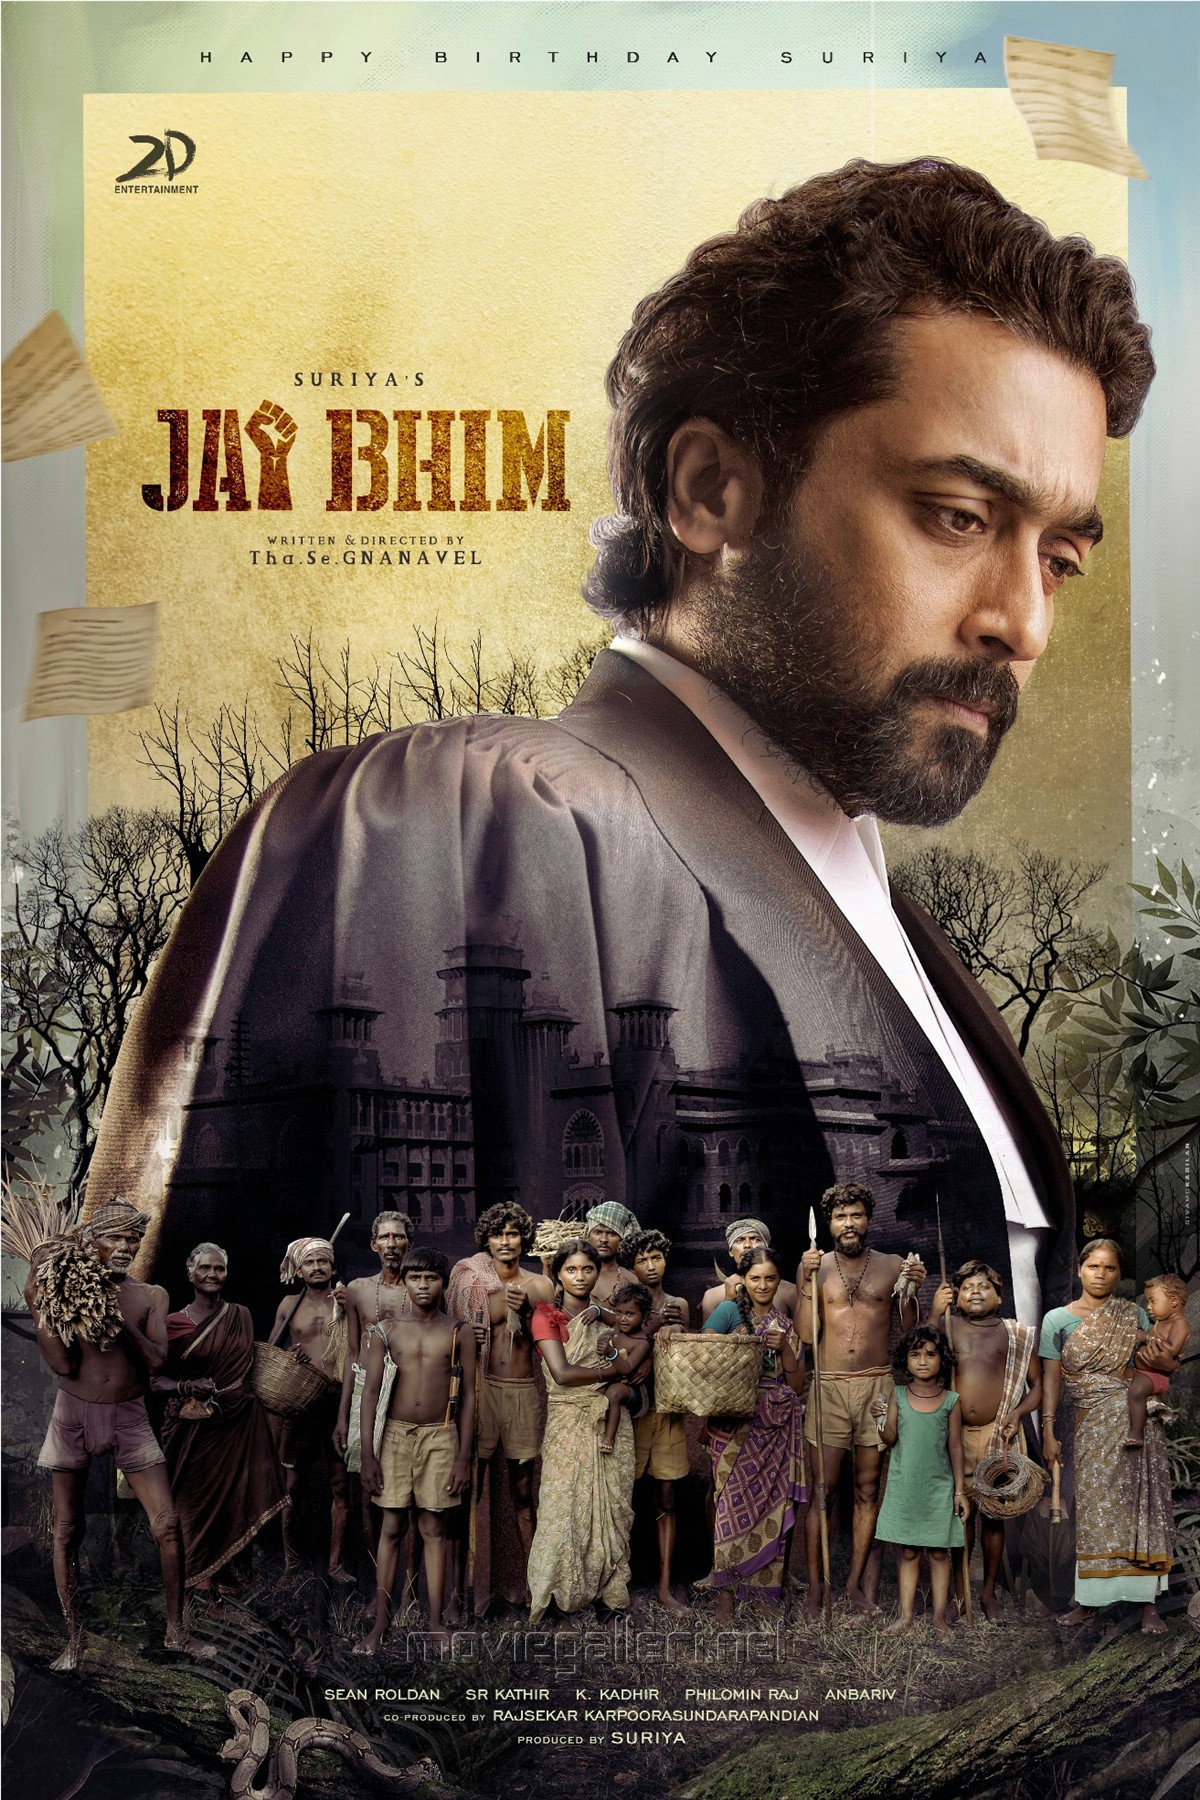 'Jai Bhim' movie suriya